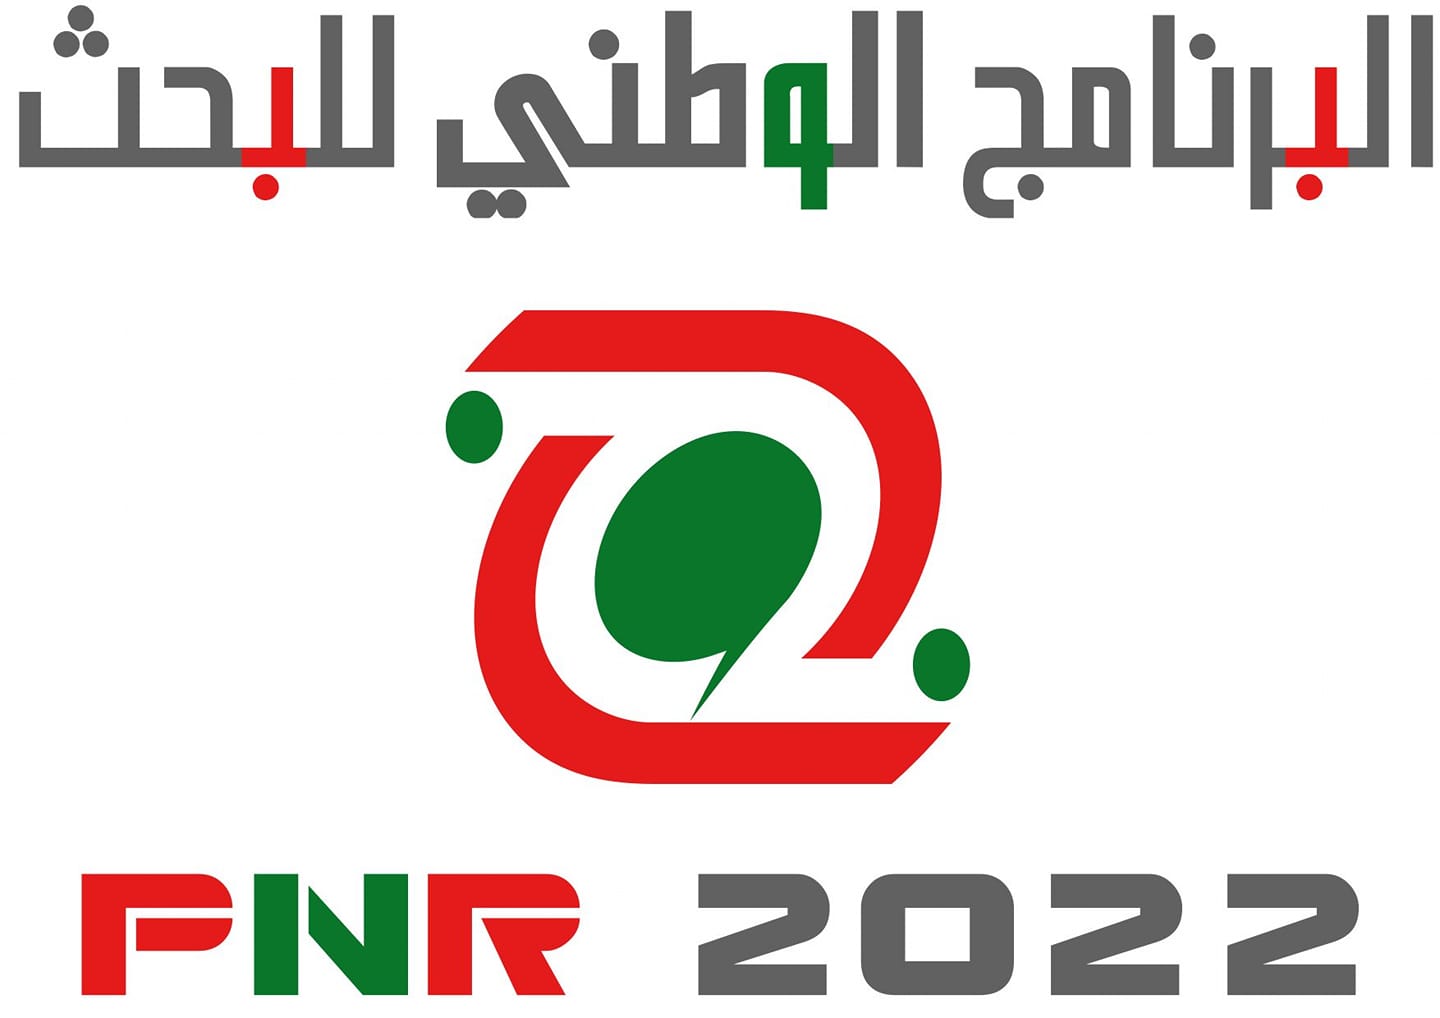 Résultats de l’expertise scientifique des projets PNR 2022